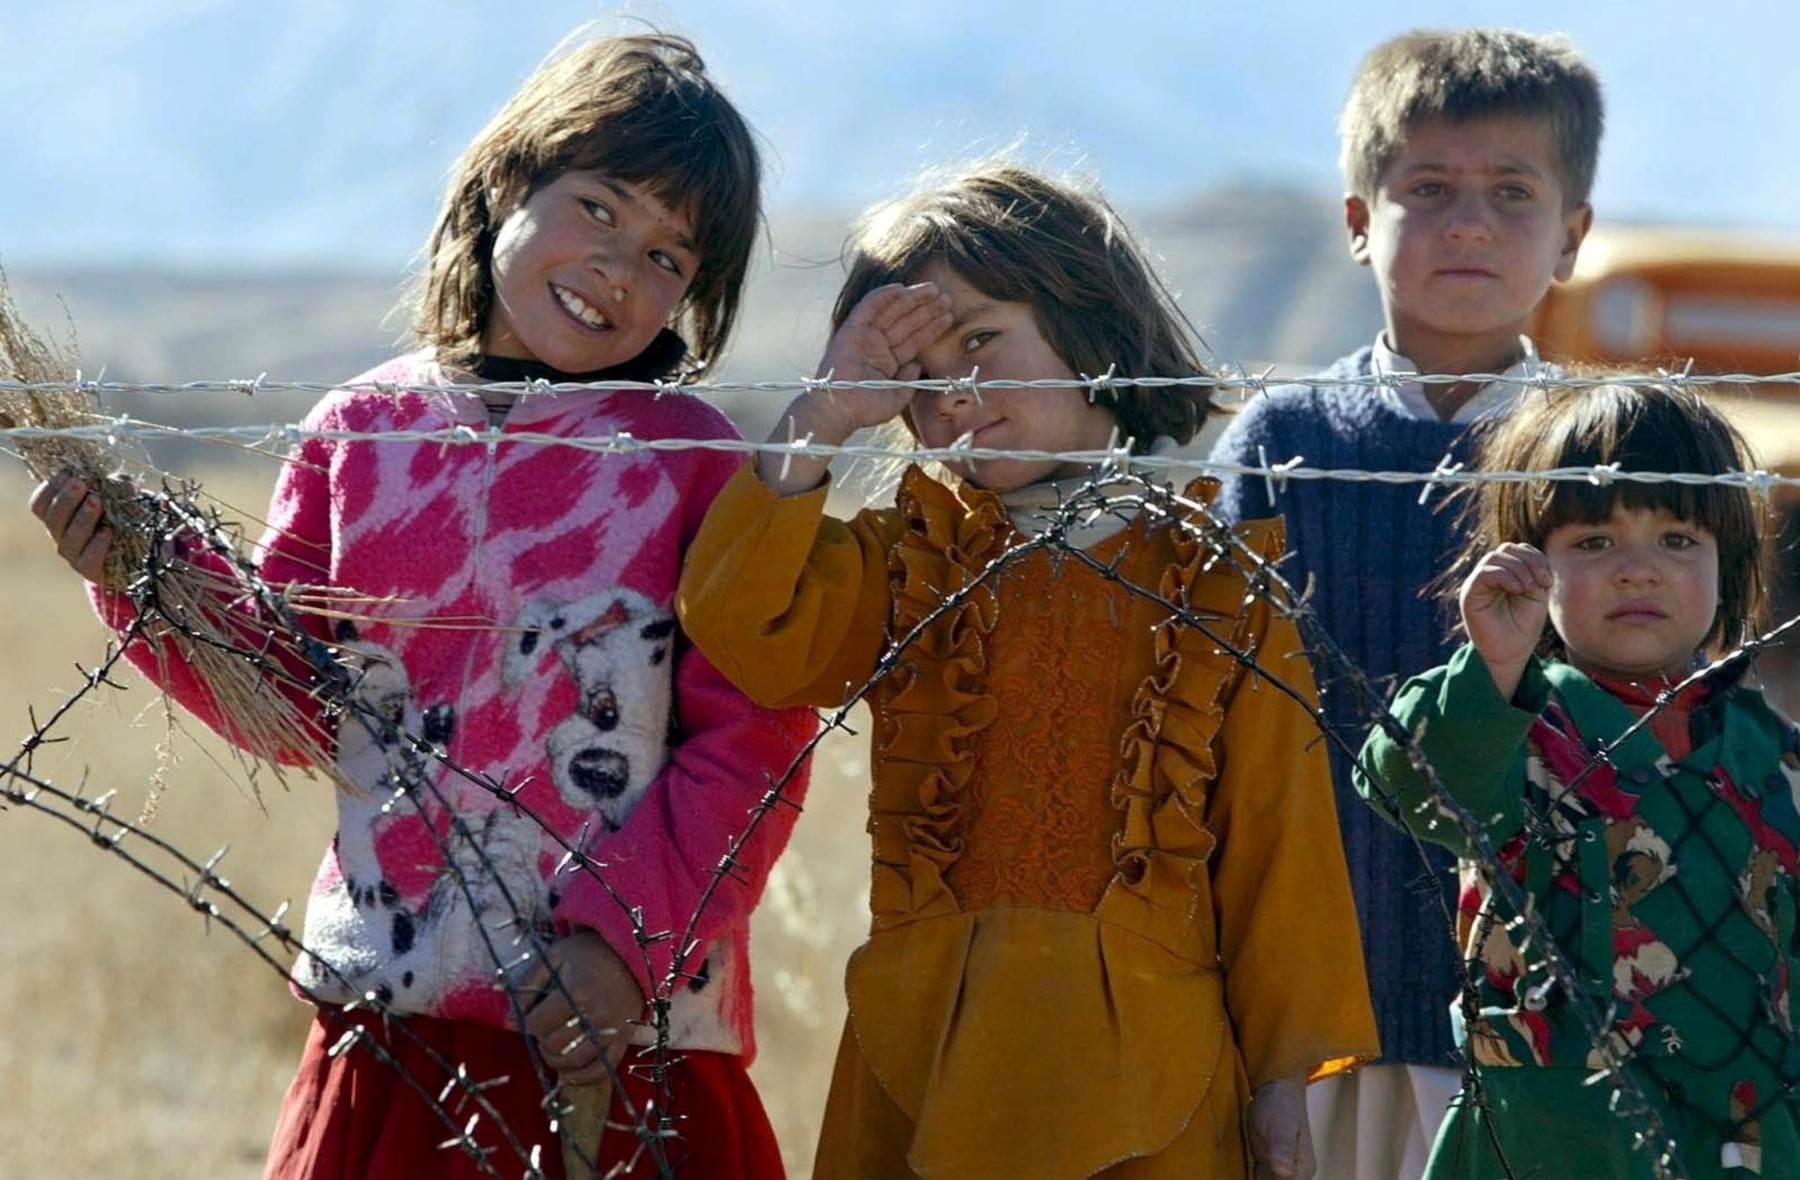 Schon 2002 fotografierte Anja Niedringhaus Kinder in Afghanistan.